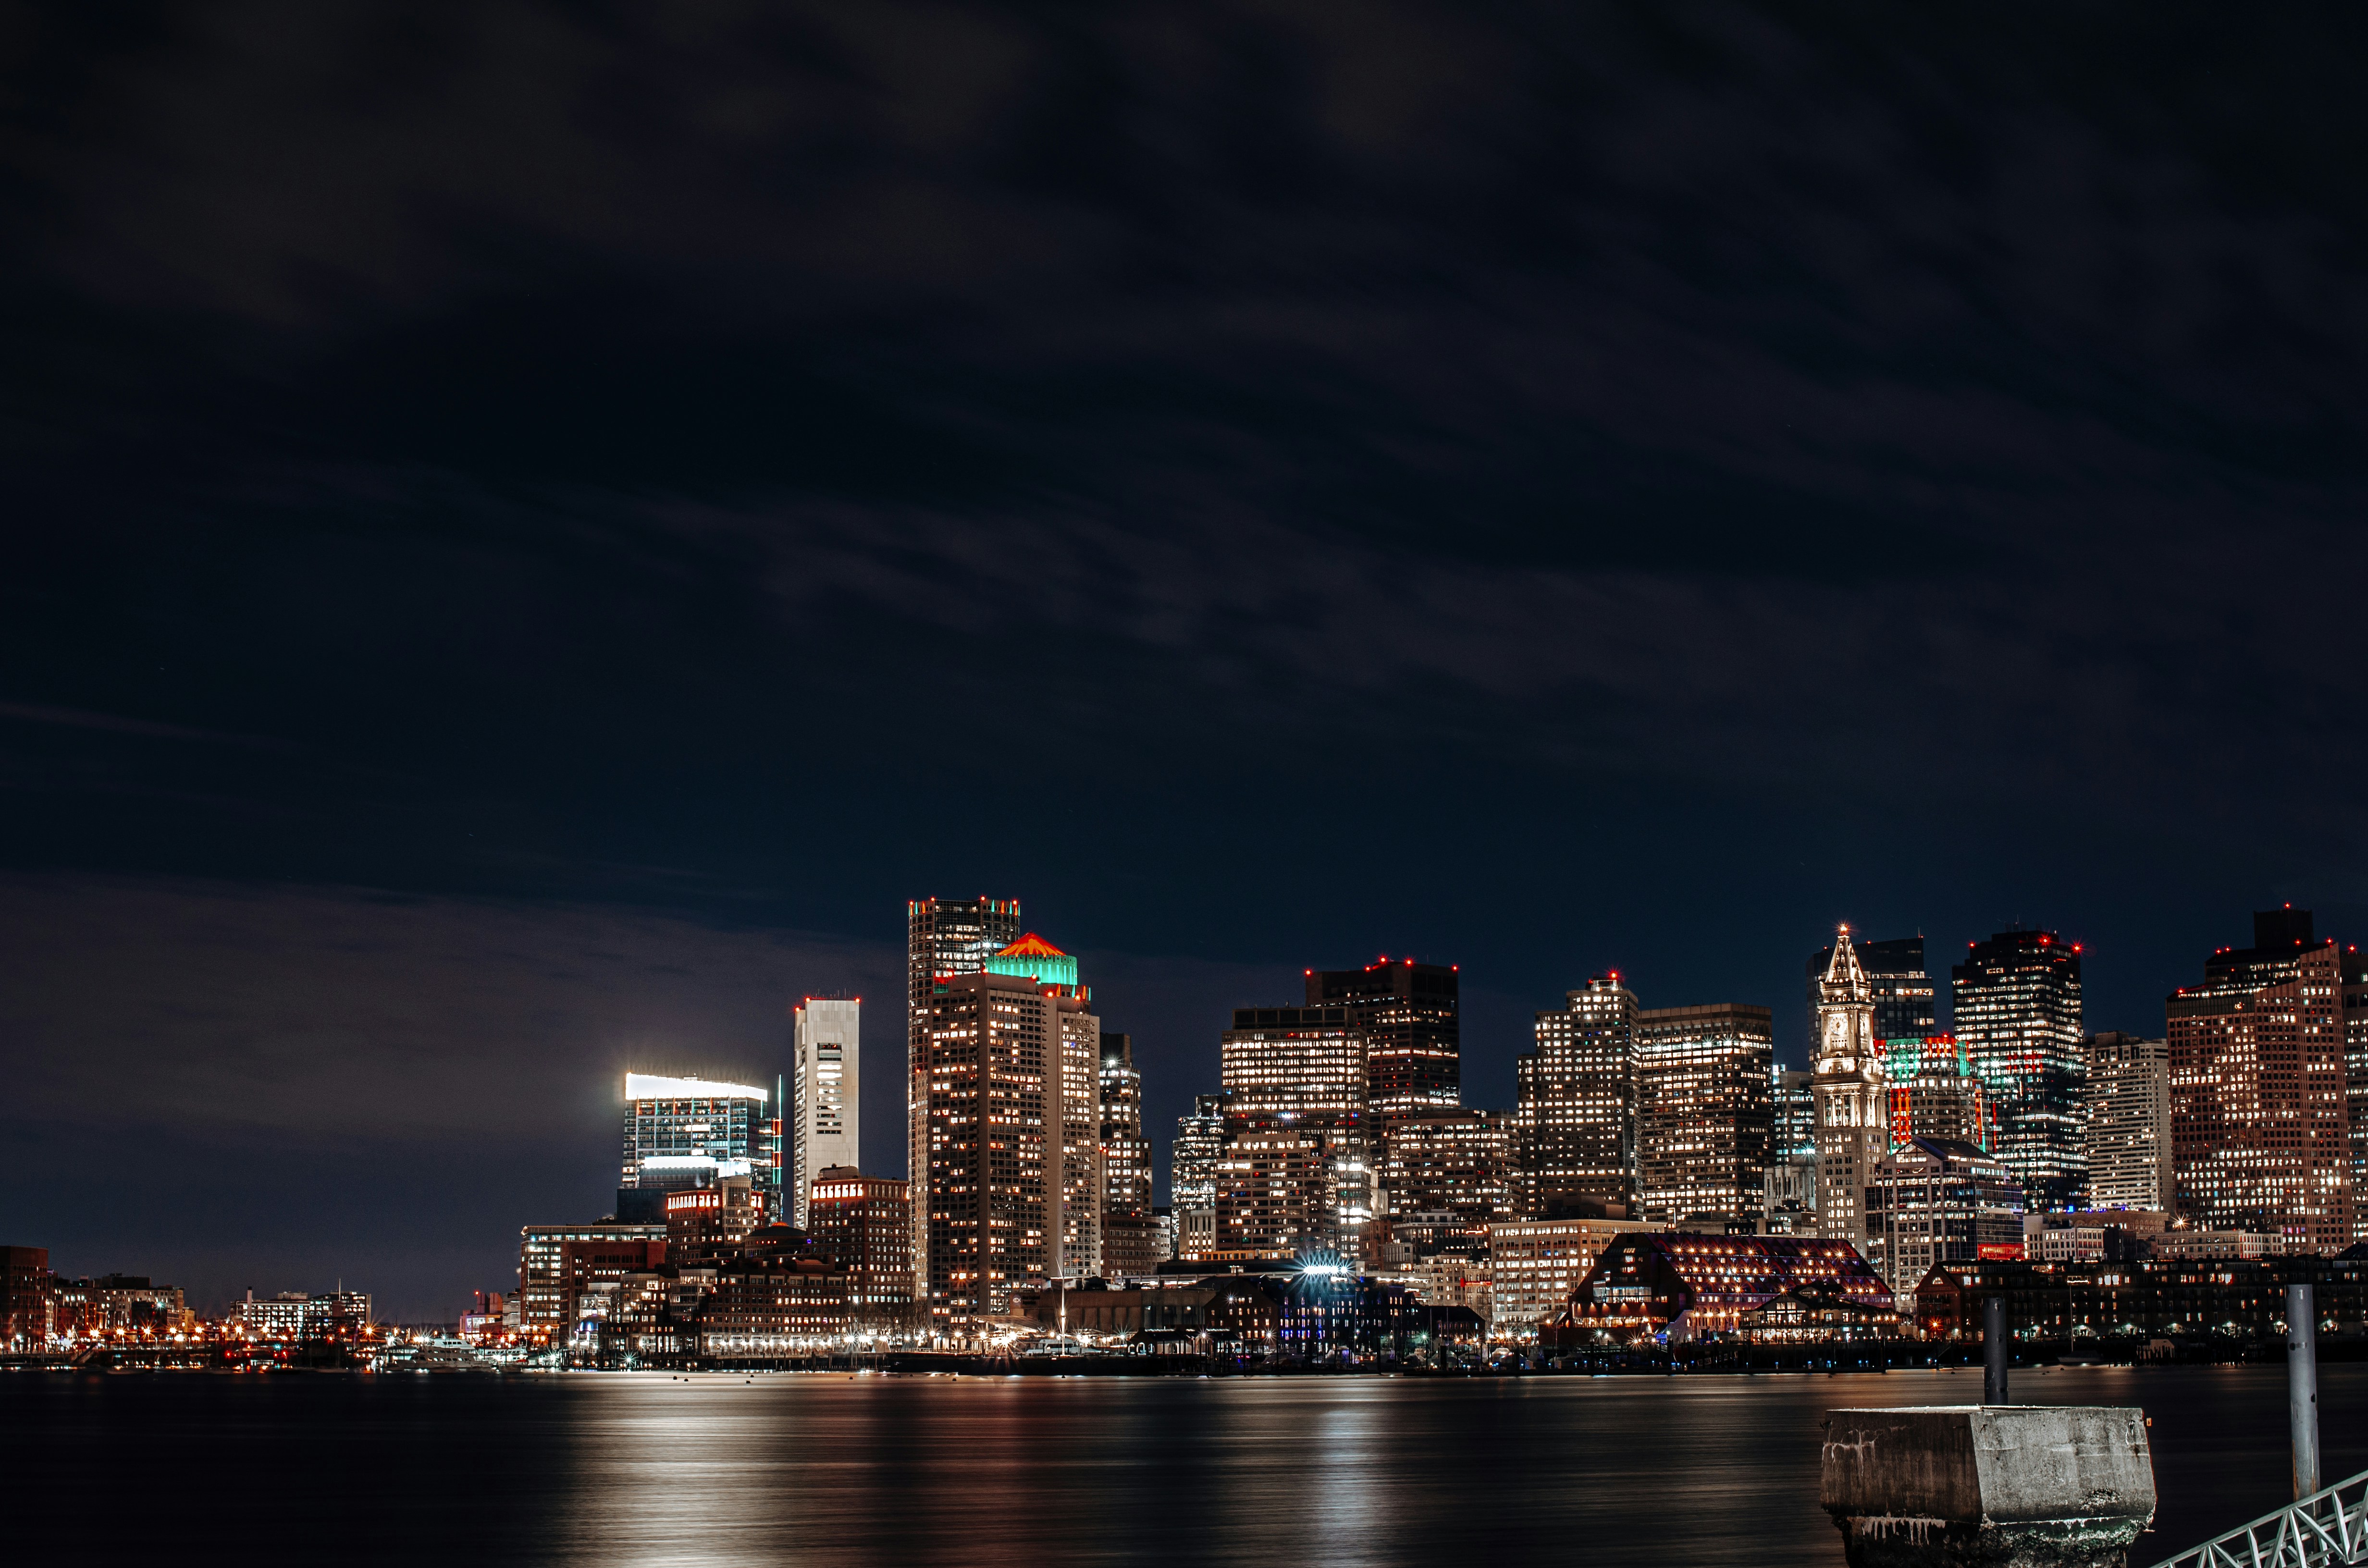 Boston at night.